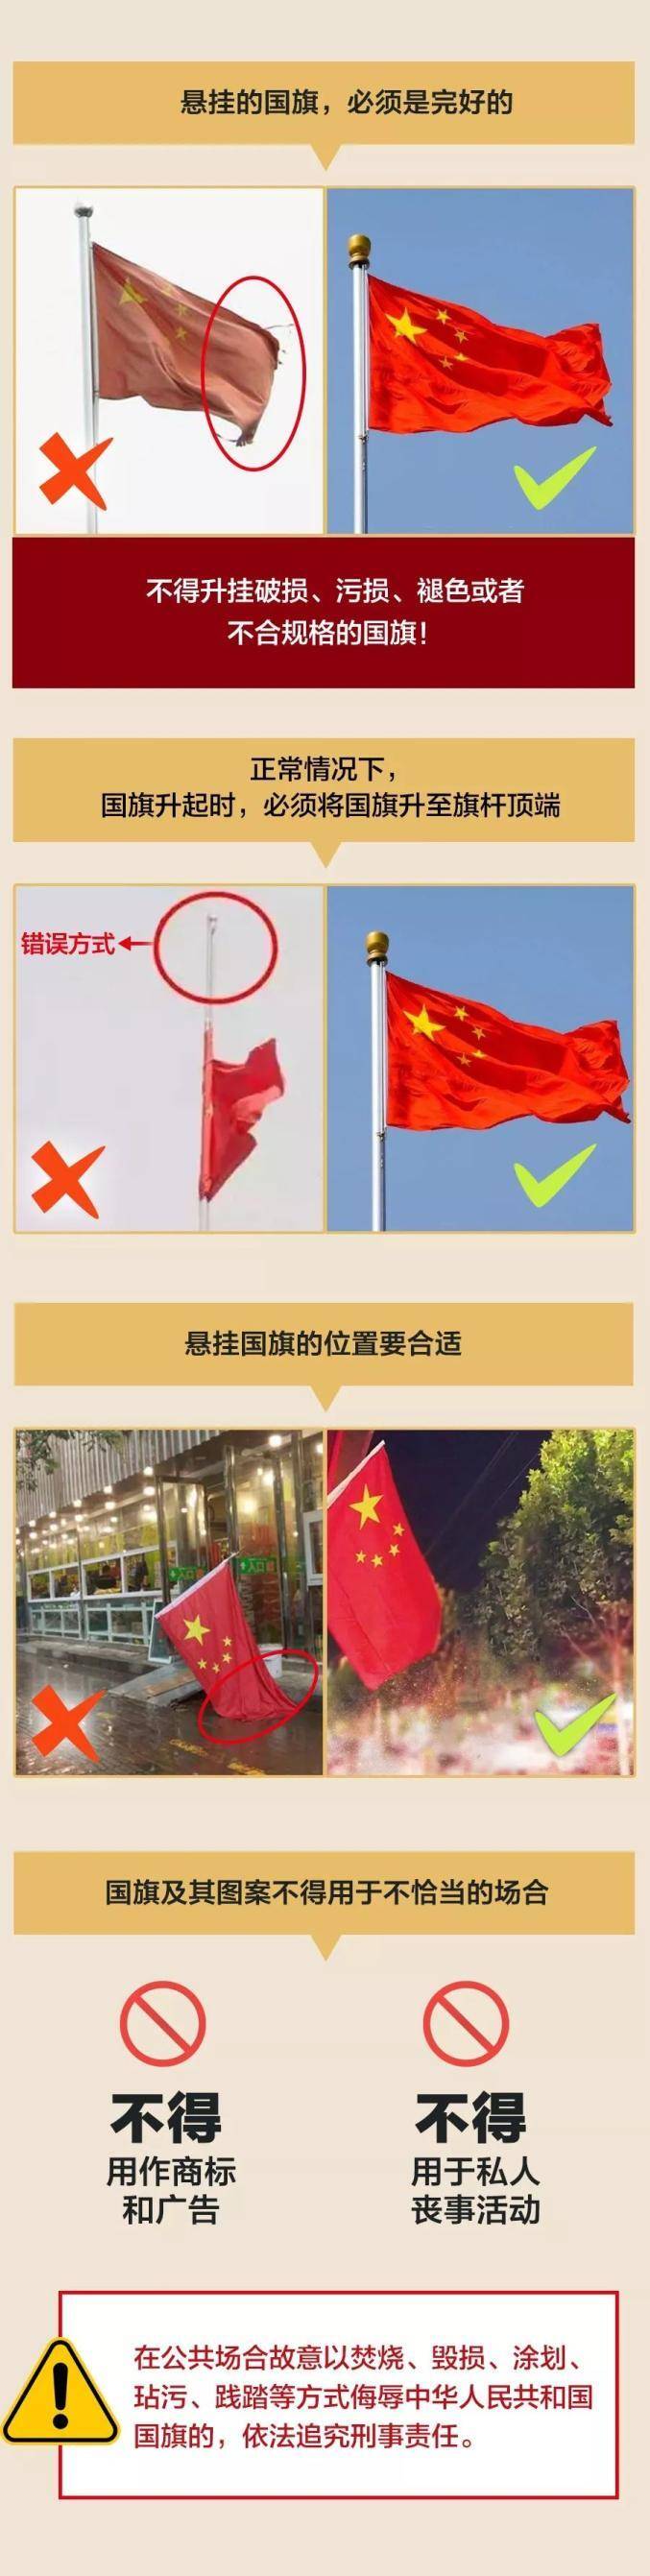 《中华人民共和国国旗法》严肃认真地按照规定来悬挂国旗让五星红旗